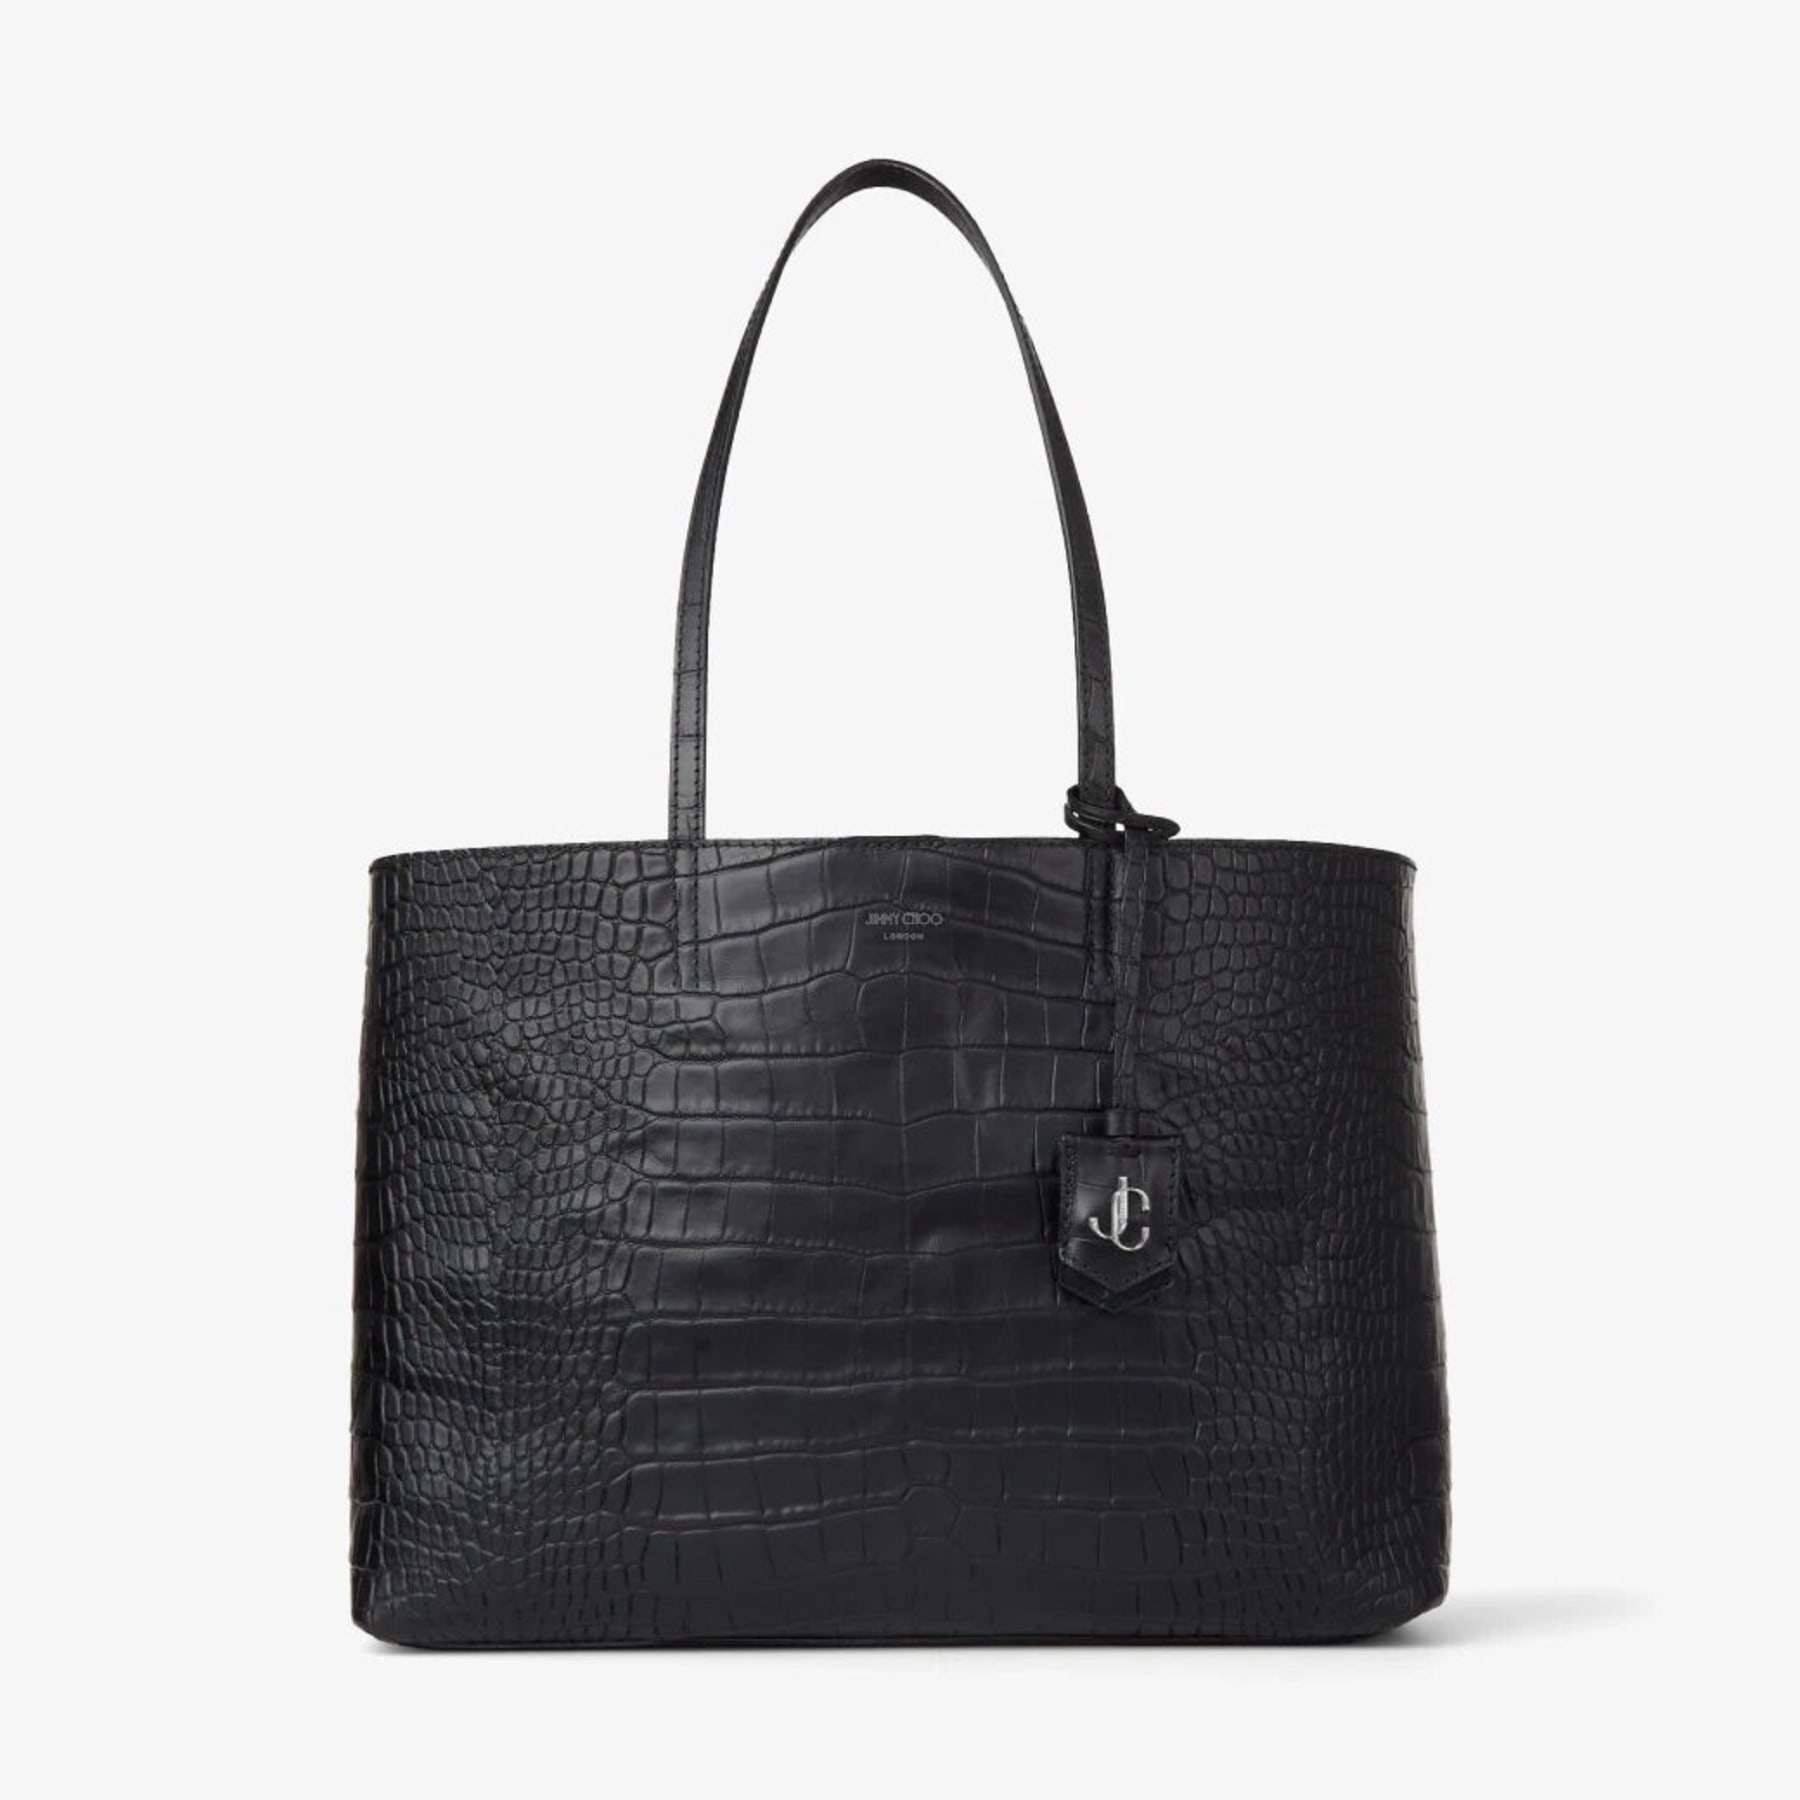 embossed bag black